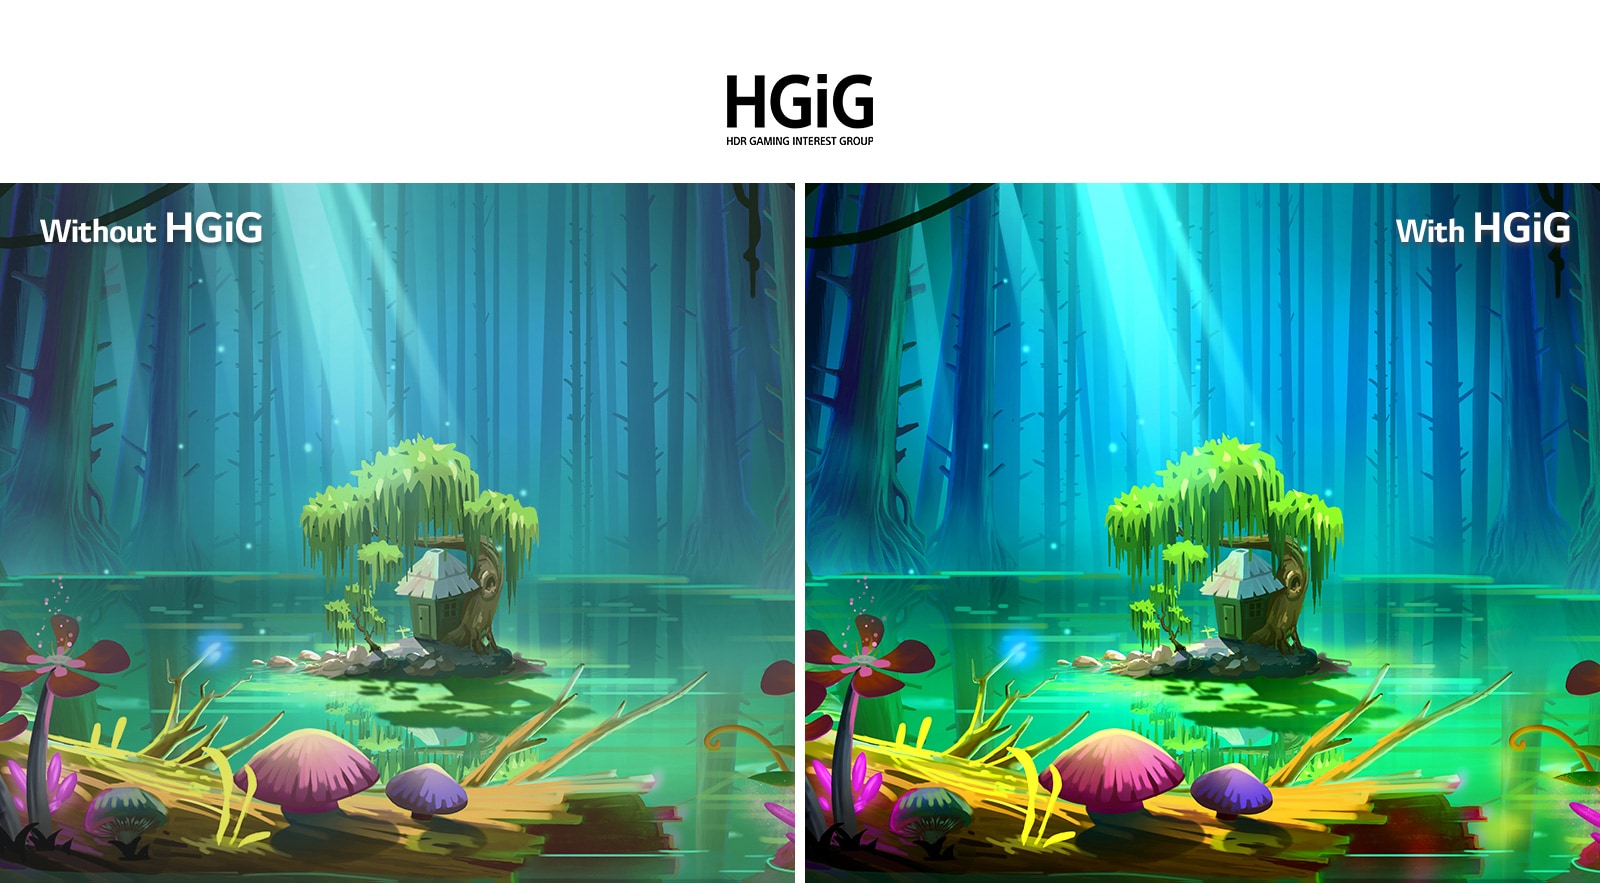 Анимированное изображение домика с деревом на небольшой площадке, посреди которой расположен пруд, окруженный высокими деревьями без листвы, с текстом 'С HGIG' в верхнем правом углу. Это изображение ярче и качественнее, чем картинка без HGiG.